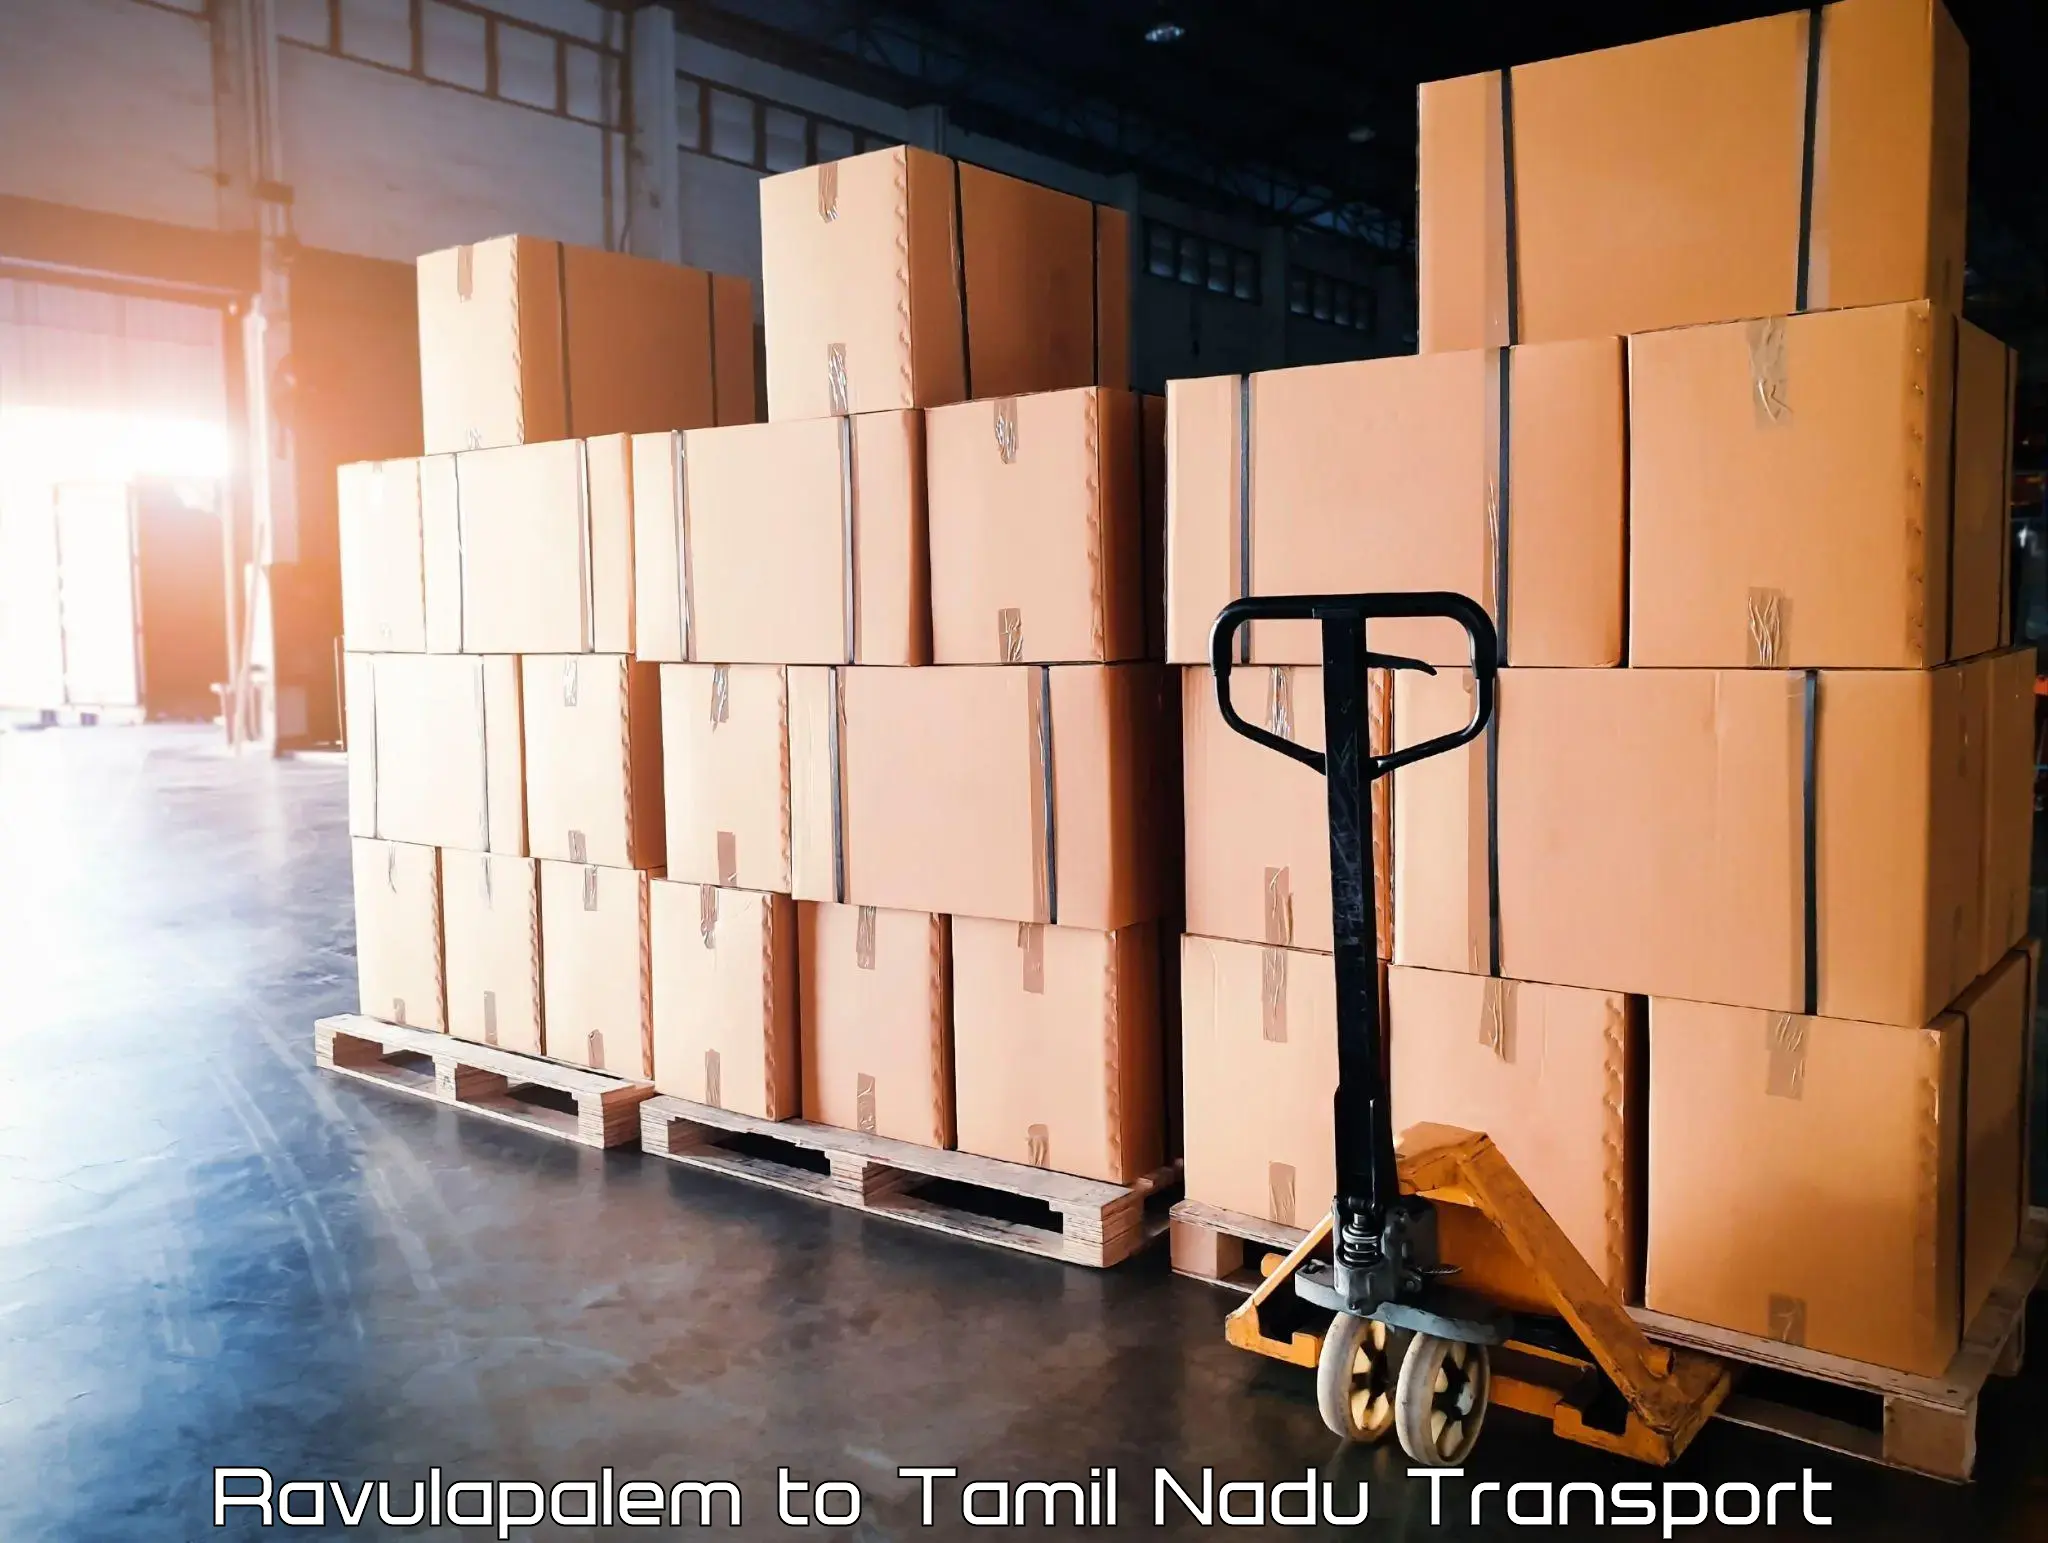 Daily parcel service transport Ravulapalem to Viralimalai